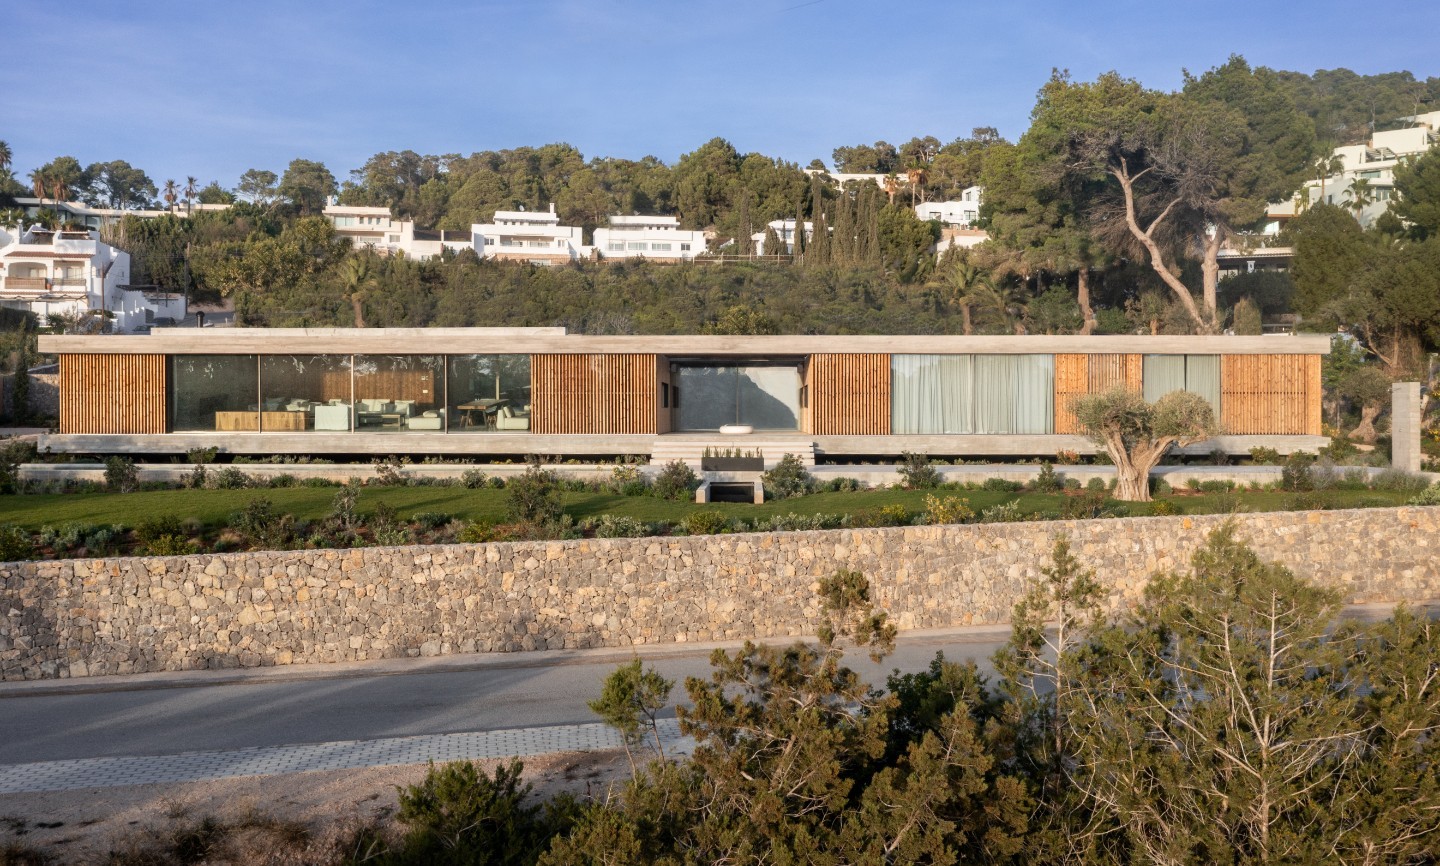 Precioso proyecto el de esta vivienda en Ibiza revestida con listones de madera termotratada de Lunawood, que brindan una apariencia moderna y a la vez natural a la vivienda.

Fotógrafo: Joan Torres
Arquitecto: Adrián Bedoya (BMA Arquitectura)